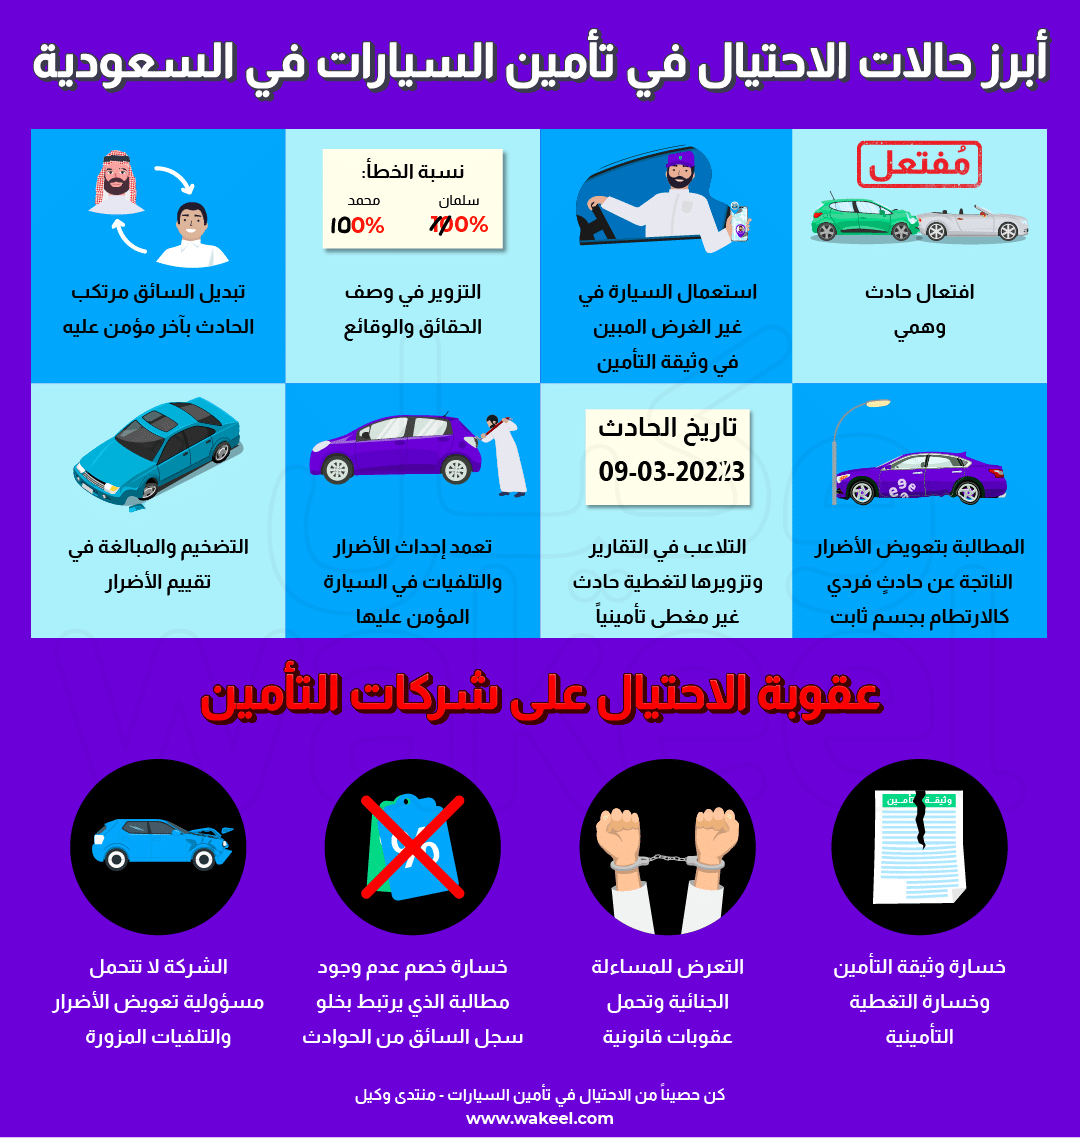 صورة انفوغرافيك توضح أبرز حالات الاحتيال في تأمين السيارات في السعودية. يذكر الملصق أيضًا عقوبة الاحتيال على شركات التأمين.